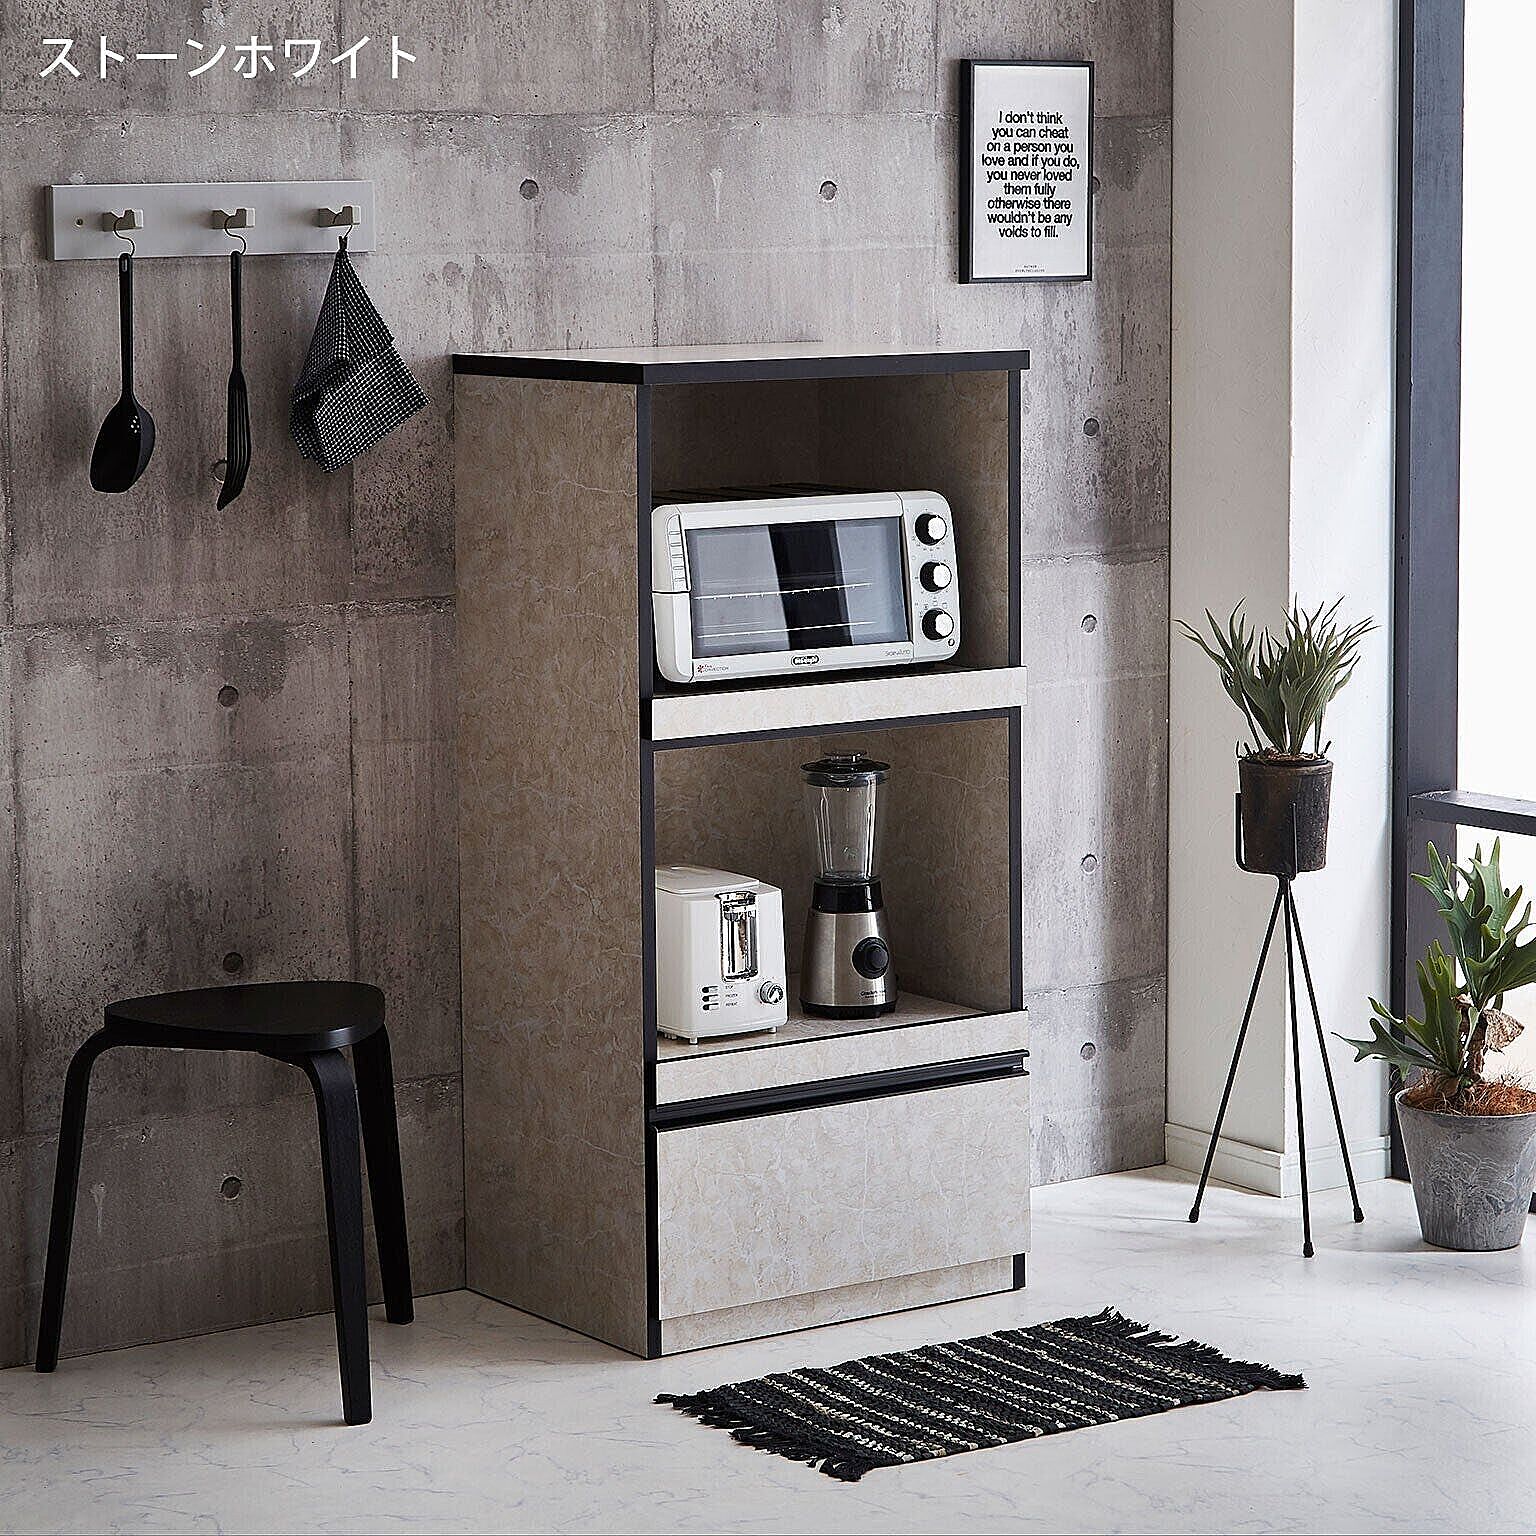 食器棚 レンジ台 レンジラック レンジボード 家電収納 スイム 幅59cm 完成品 日本製 コンパクト